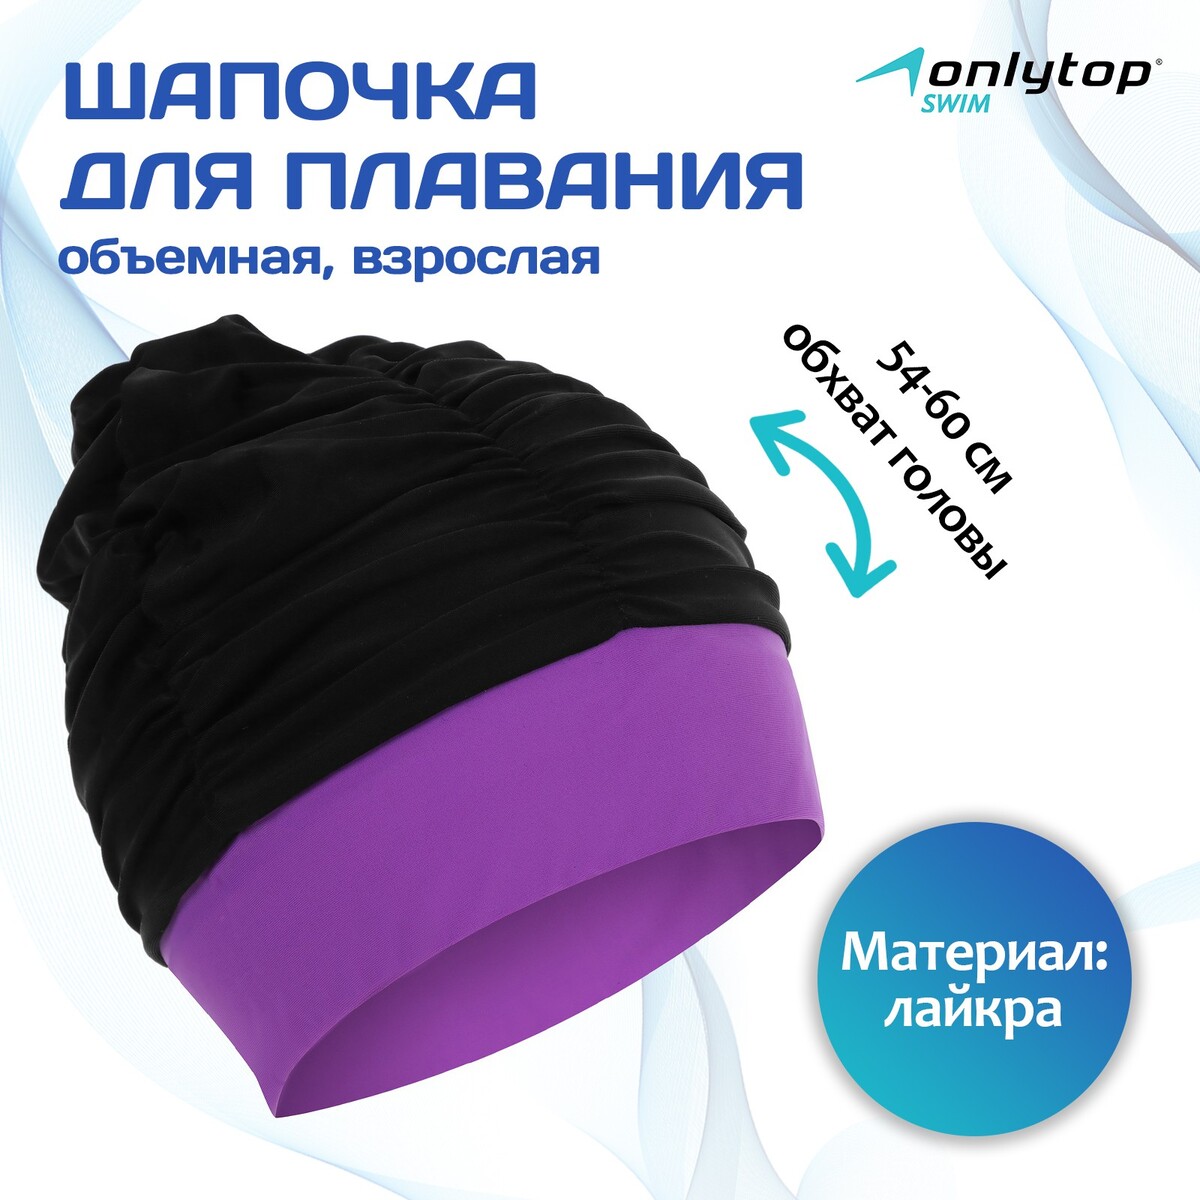 Шапочка для плавания взрослая, объемная, лайкра, обхват 54-60 см, цвет черный/фиолетовый, ONLYTOP